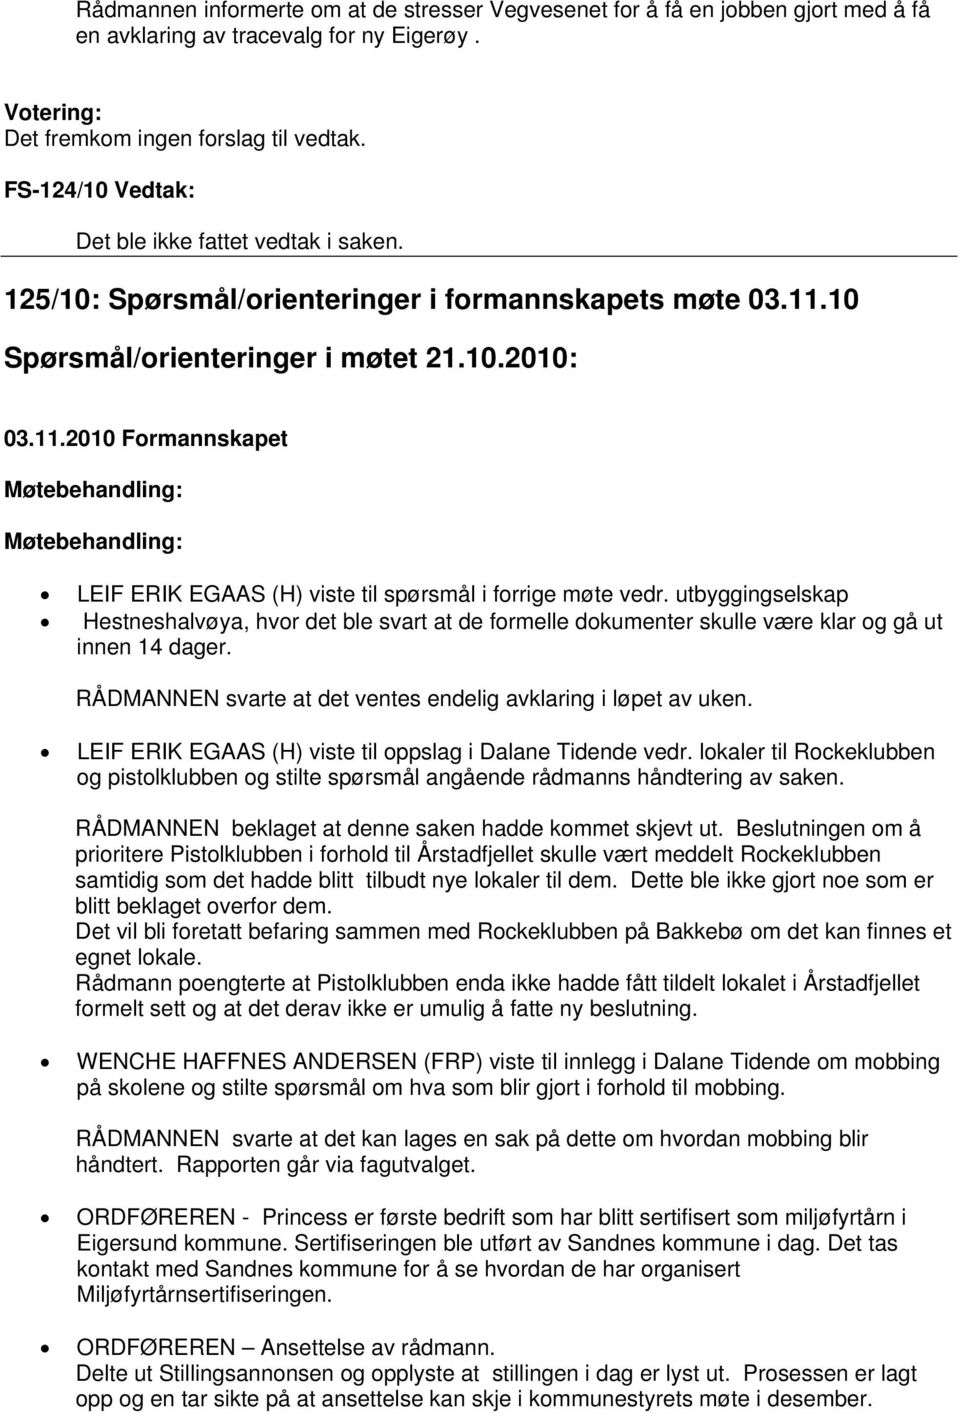 utbyggingselskap Hestneshalvøya, hvor det ble svart at de formelle dokumenter skulle være klar og gå ut innen 14 dager. RÅDMANNEN svarte at det ventes endelig avklaring i løpet av uken.